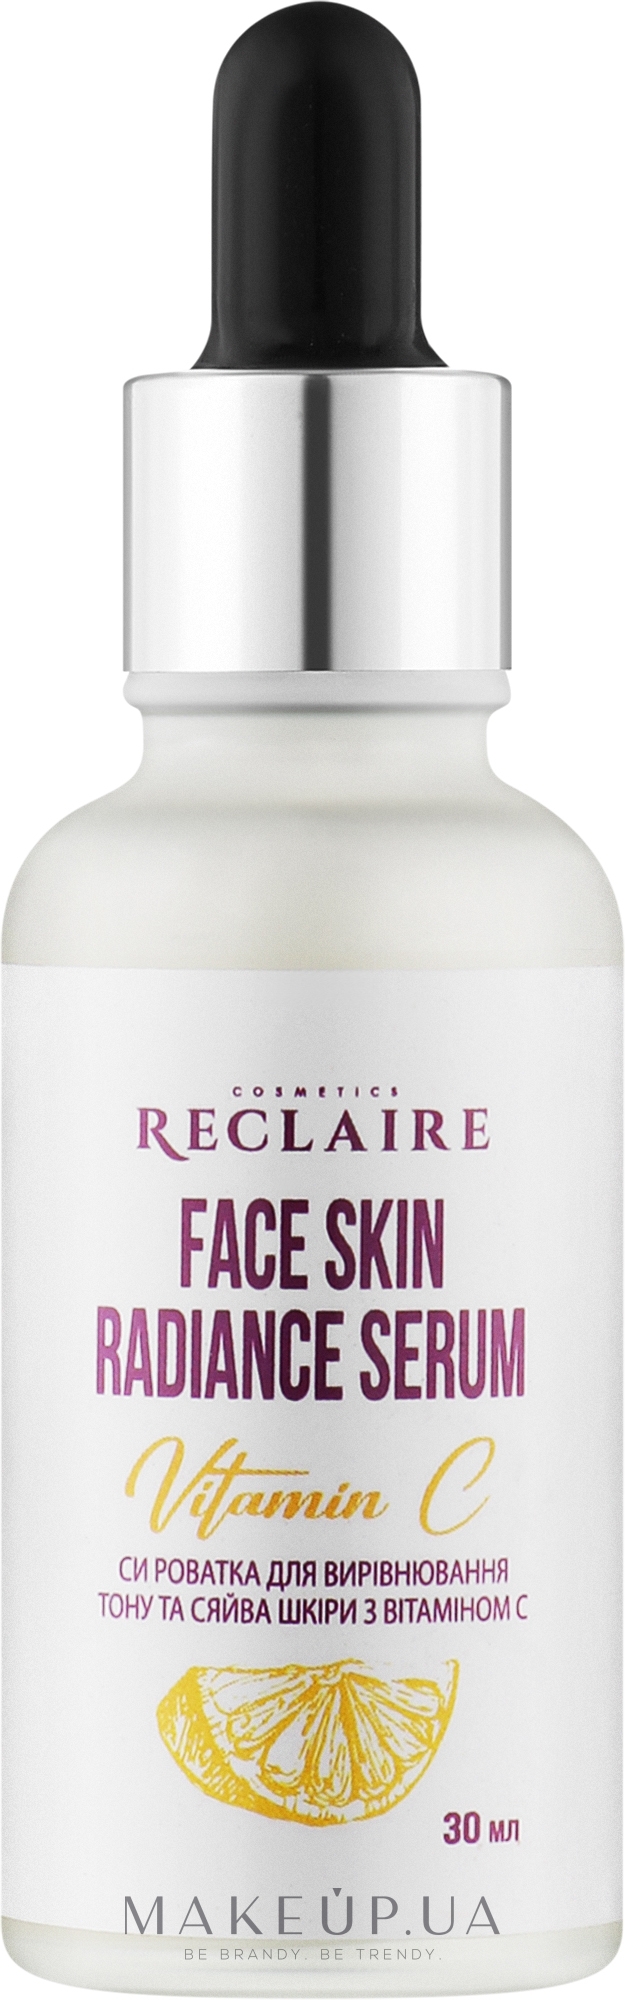 Сыворотка для выравнивания тона и сияния кожи с витамином C - Reclaire Face Skin Radiance Serum — фото 30ml